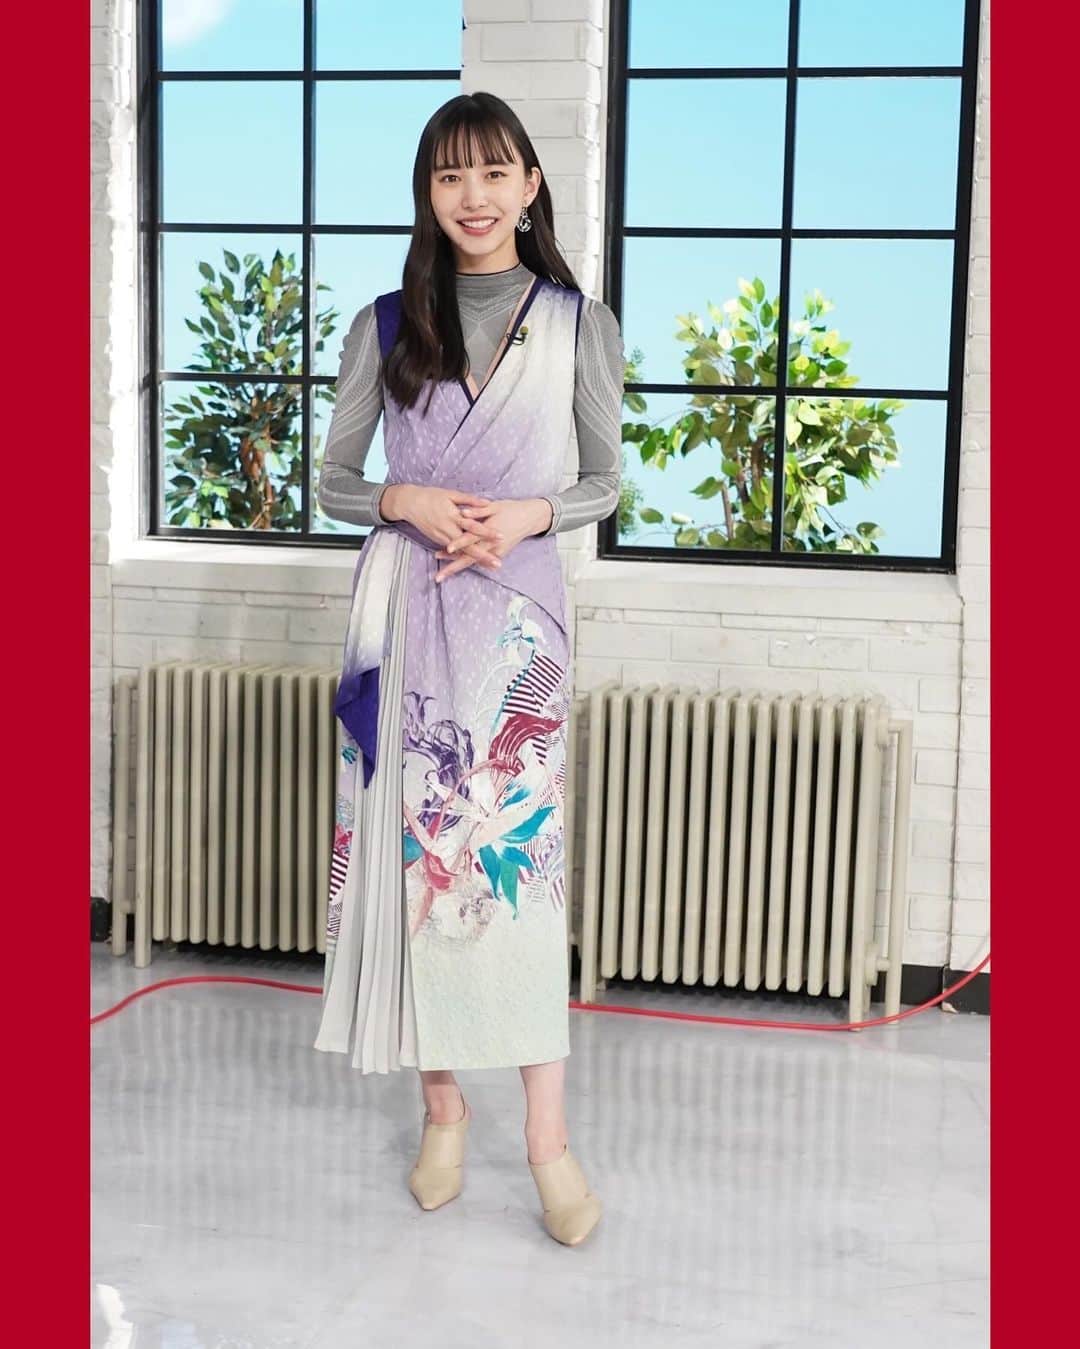 日本テレビ「おしゃれイズム」のインスタグラム：「井桁弘恵のおしゃれチェック😍 2023年12月10日放送分  #石川さゆり さんをお迎えしての #おしゃれクリップ いかがでしたか？👘  さゆりさんといえば素敵なお着物！というイメージでしたが、 今回はなんと私物のブラックドレスでご登場💓  というわけで一方のいげちゃんは一瞬、着物？と思うような和テイストのドレス✨ 裾のデザインなども綺麗で、こんなドレスがあるんだーと何度もじっと見てしまいました☺️  大好評！スタイリストさんからのコメントもご紹介します📝  -----  今回のゲストはなんとっ‼️日本の宝🗾石川さゆりさん✨  石川さゆりさん。石川さゆりさん‼️ どんな衣装でお迎えしよう、、。🤔 と。いろいろと探していたところ💨  出会っちゃいました🥰ぴったりな‼️ このドレス👗💕見つけた瞬間「このこだあー❣️」と嬉しくなりました😋  @somarta_official の着物ドレス👘 友禅プリントのお着物の様なドレスです👗👘 京都の老舗友禅染の千總によるシルク格子織りに✨手書き箔友禅✨京刺繍✨ なんとっ贅沢な👏👏👏丁寧に作られた🤲 和装と洋装のいいところが集まった1着です✨✨ お着物をもっと日常に近くに感じてほしい👘💕という想いが込められています🥰  いげちゃんにはお着物みたいに重ね着を👘✨ カシュクールのインナーを衿元からちらっと見せて😋マイクの風防はグリーン🫛 半衿や重ね衿で色を差す様に👘首元で色遊びをしてみました🎨  新しい事にどんどん挑戦されて楽しんでいらっしゃる石川さゆりさん✨✨ ファッションも❤️ 守って行きたい日本の文化も取り入れて👘💕一緒に変化を楽しんで行きたいですね🗾  -----  MCのおしゃれにも今後ぜひ注目してみてくださいね💁‍♀️  #おしゃれクリップ #井桁弘恵 #ファッション #ファッションコーデ #ootd #fashion」